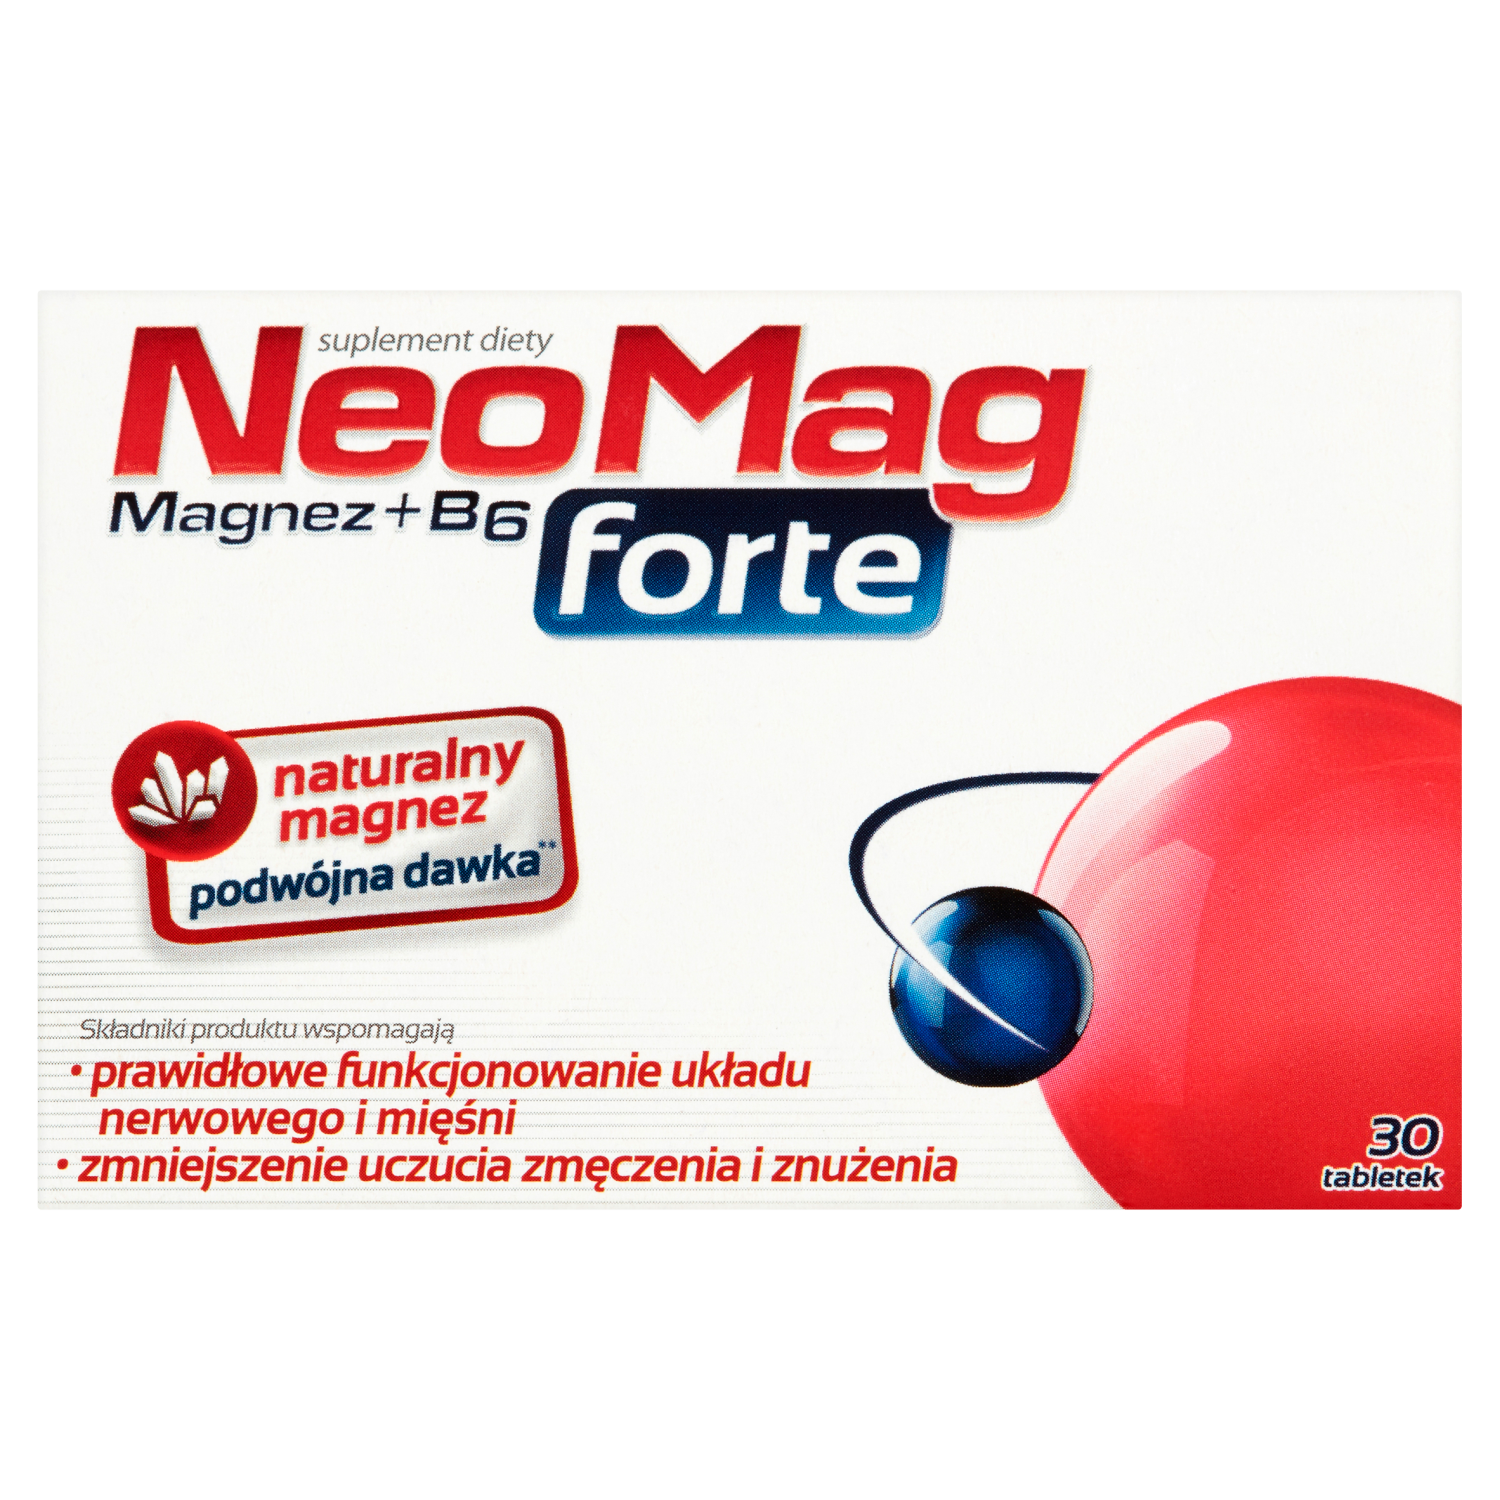 Neomag Forte биологически активная добавка, 30 таблеток/1 упаковка биологически активная добавка vitamin c forte real pharm 90 таблеток антиоксидант для иммунитета кожи лица для мужчин и женщин